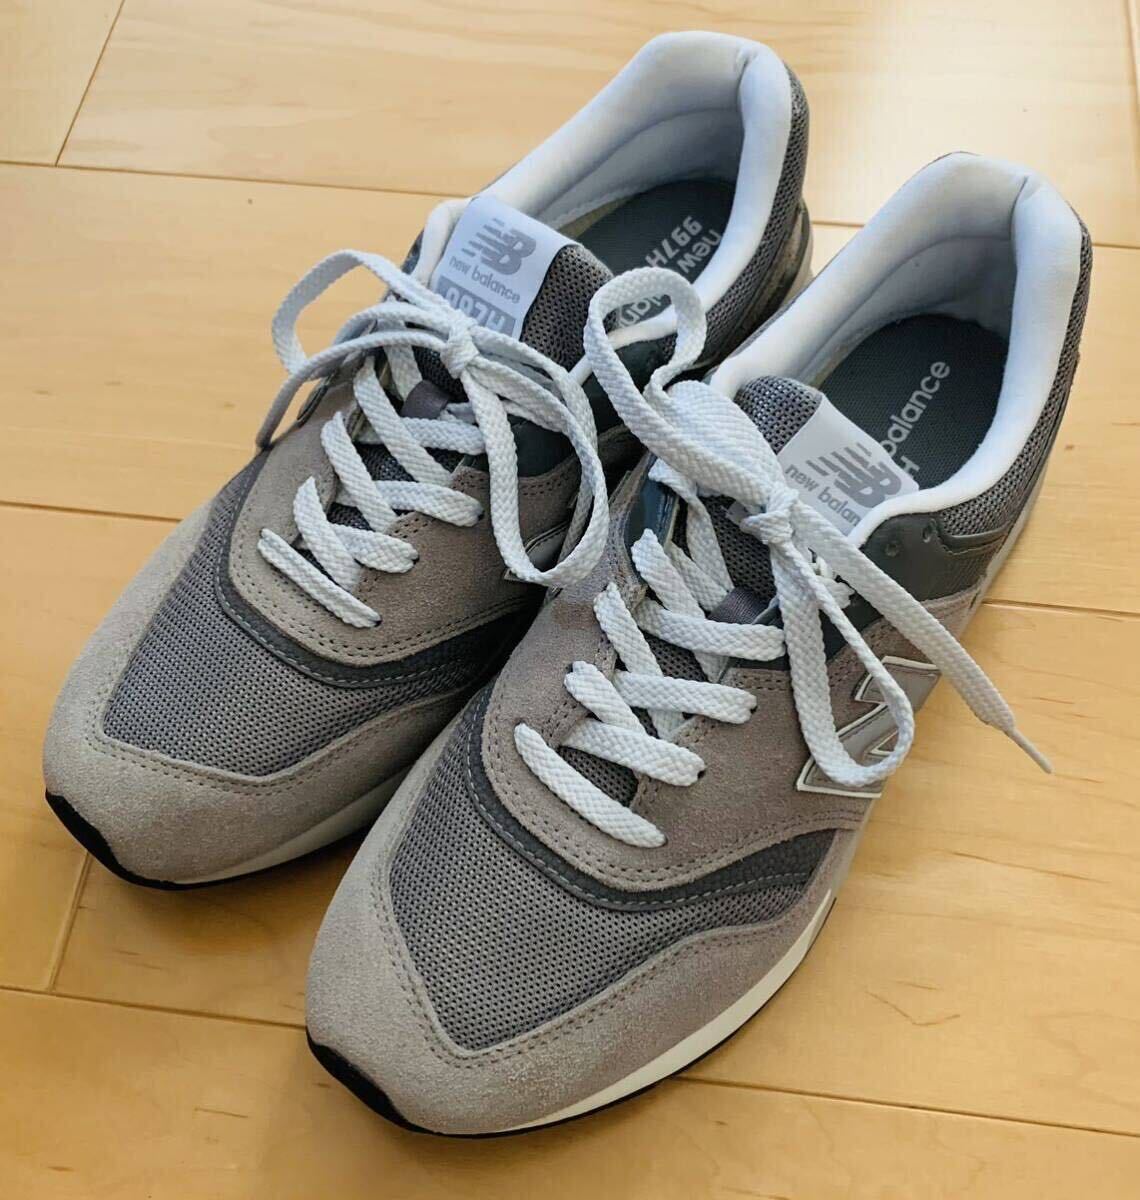  New balance 997H серый si lachic обувь 27cm US9 новый товар не использовался товар снят с производства ограничение цвет 